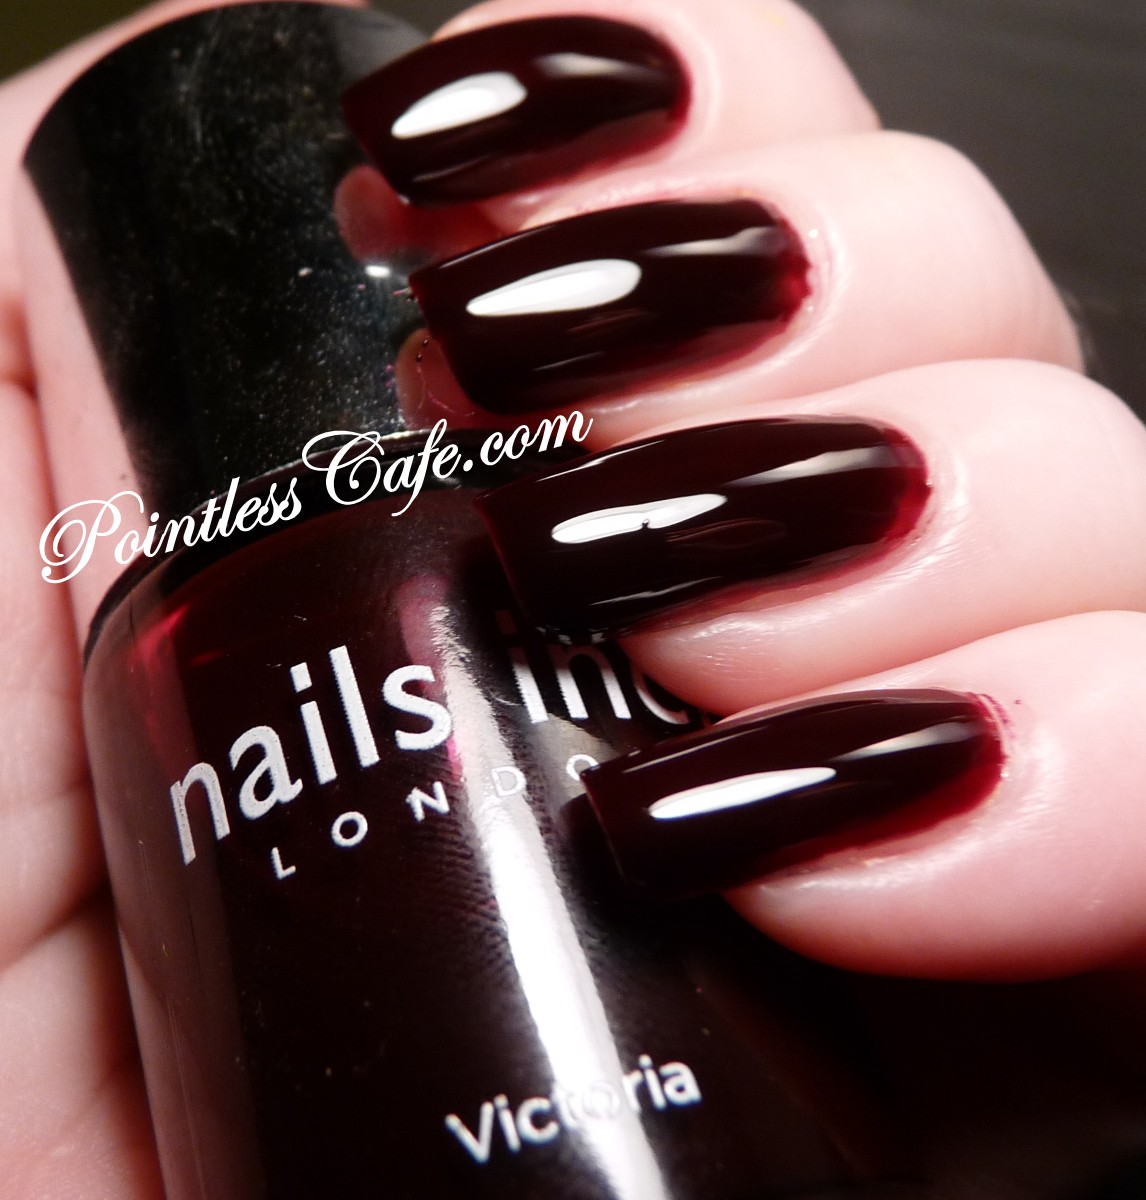 Nails Inc. Victoria